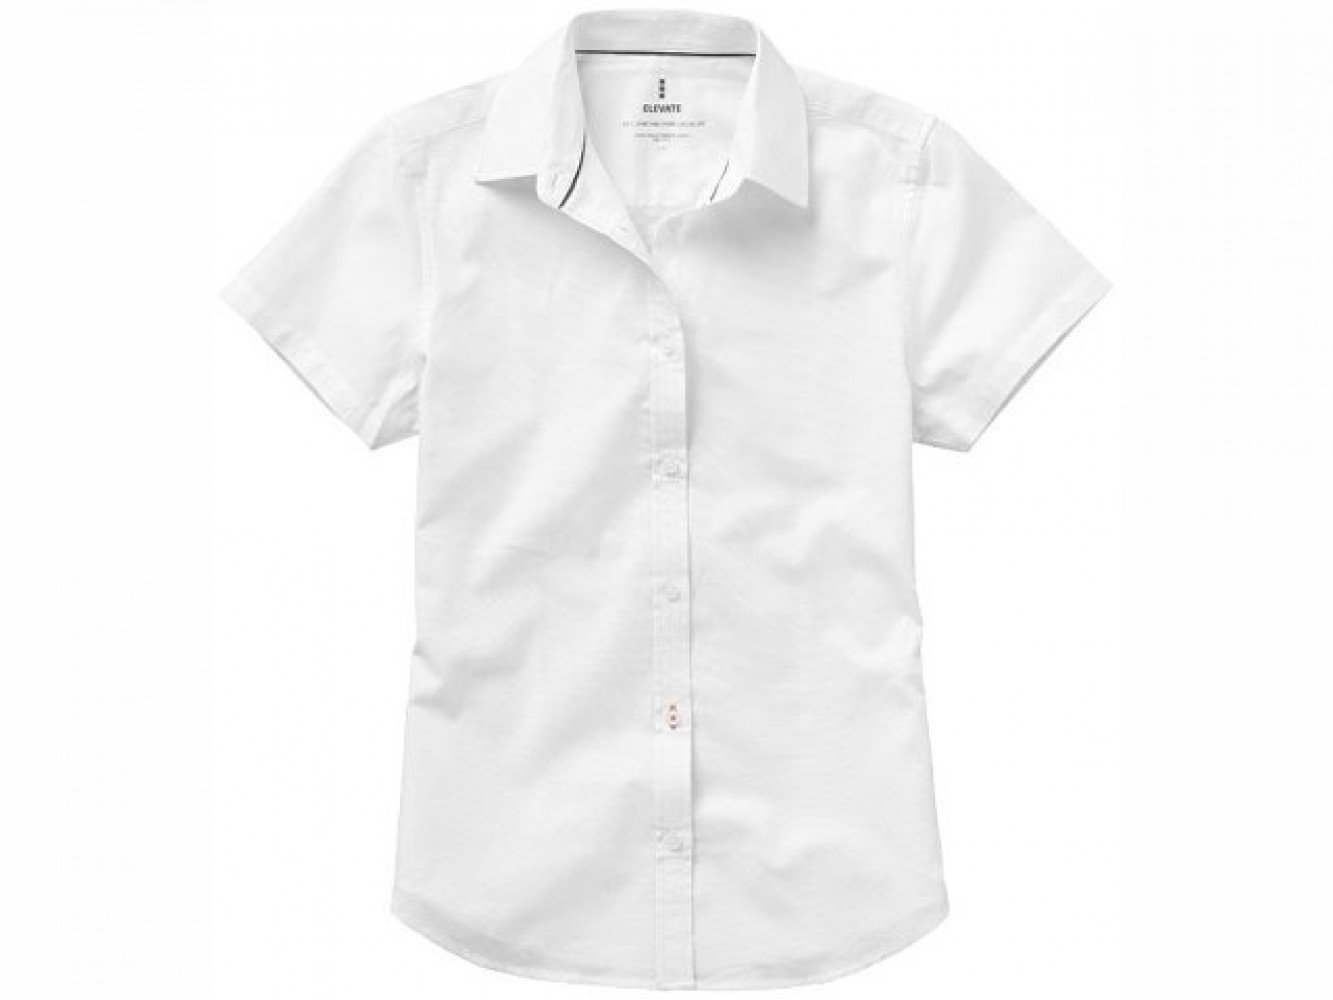 Купить белую рубашку с коротким рукавом. Рубашка Manitoba. Белая рубашка с коротким рукавом. Белая рубашка с коротким рукавом мужская. Белая рубаха с коротким рукавом.